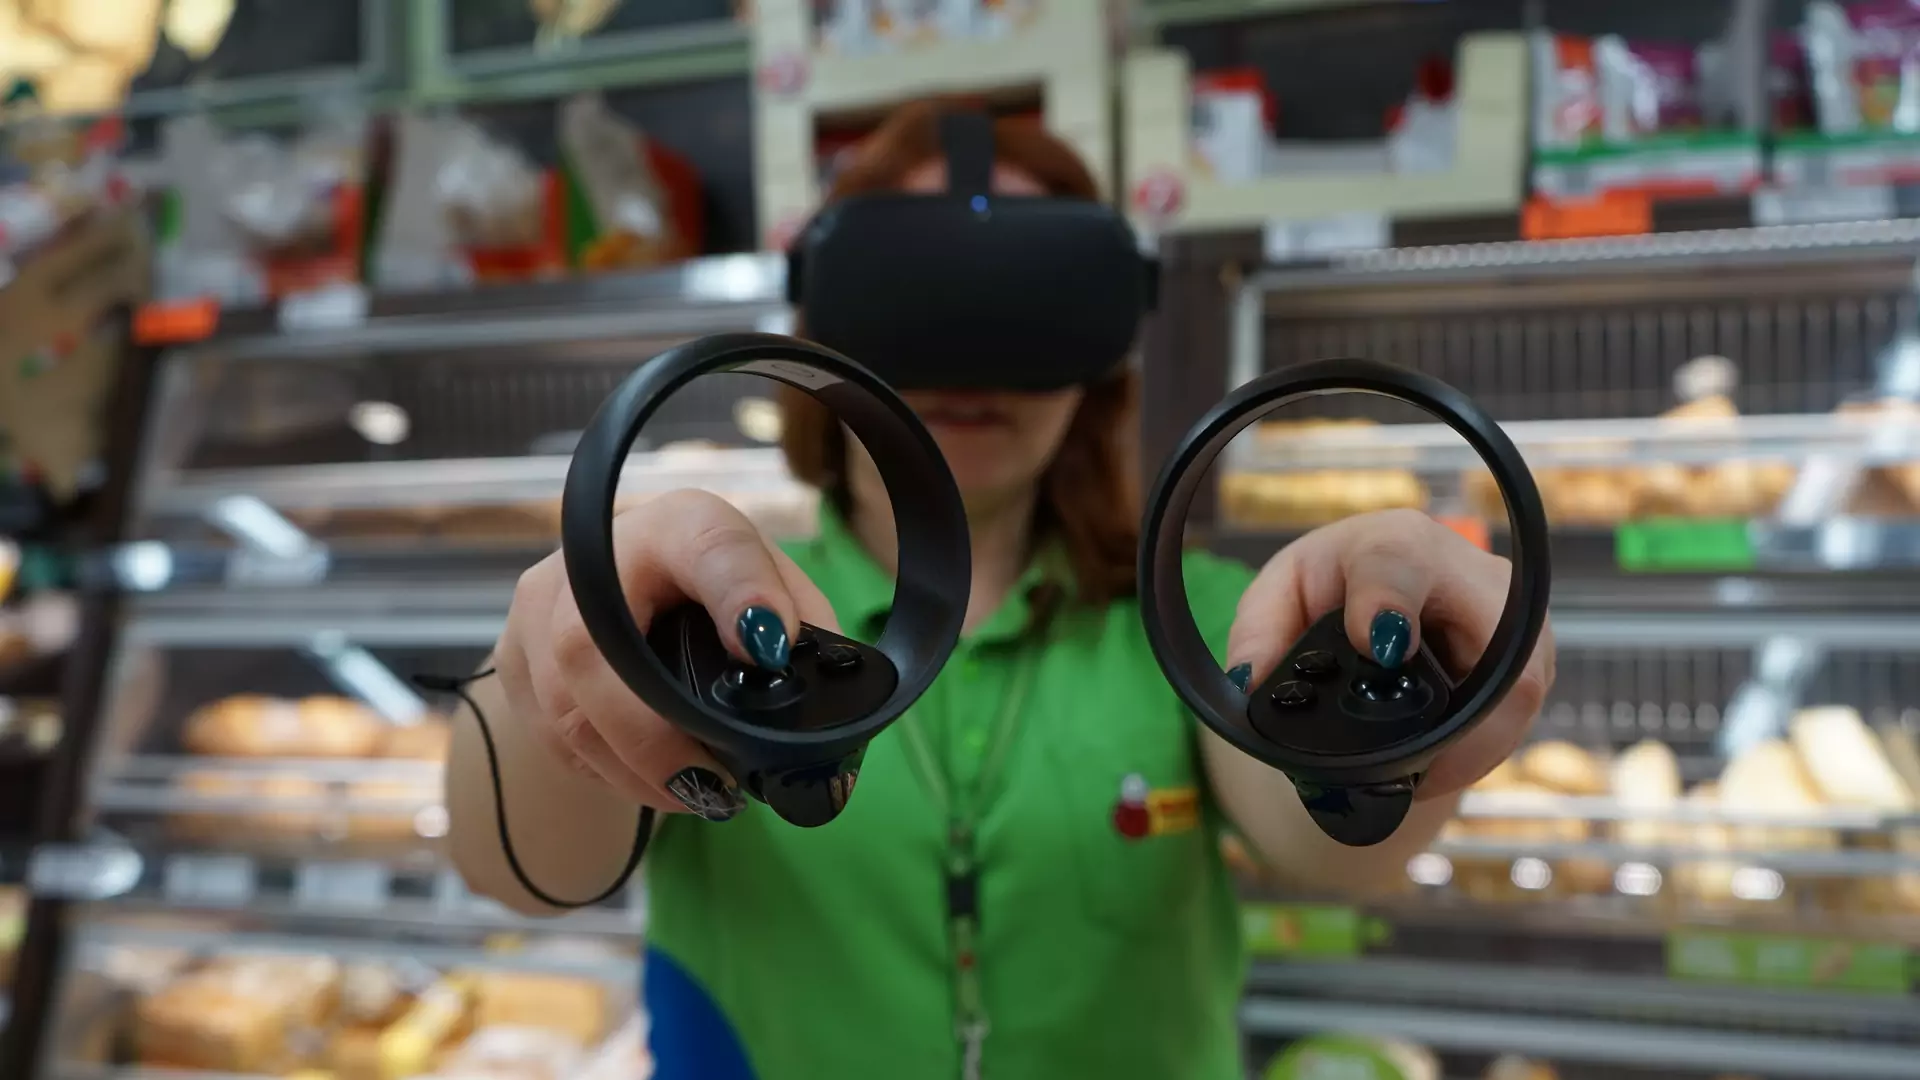 Wypieku chleba nauczą się w wirtualnej rzeczywistości. Biedronka szkoli na goglach VR